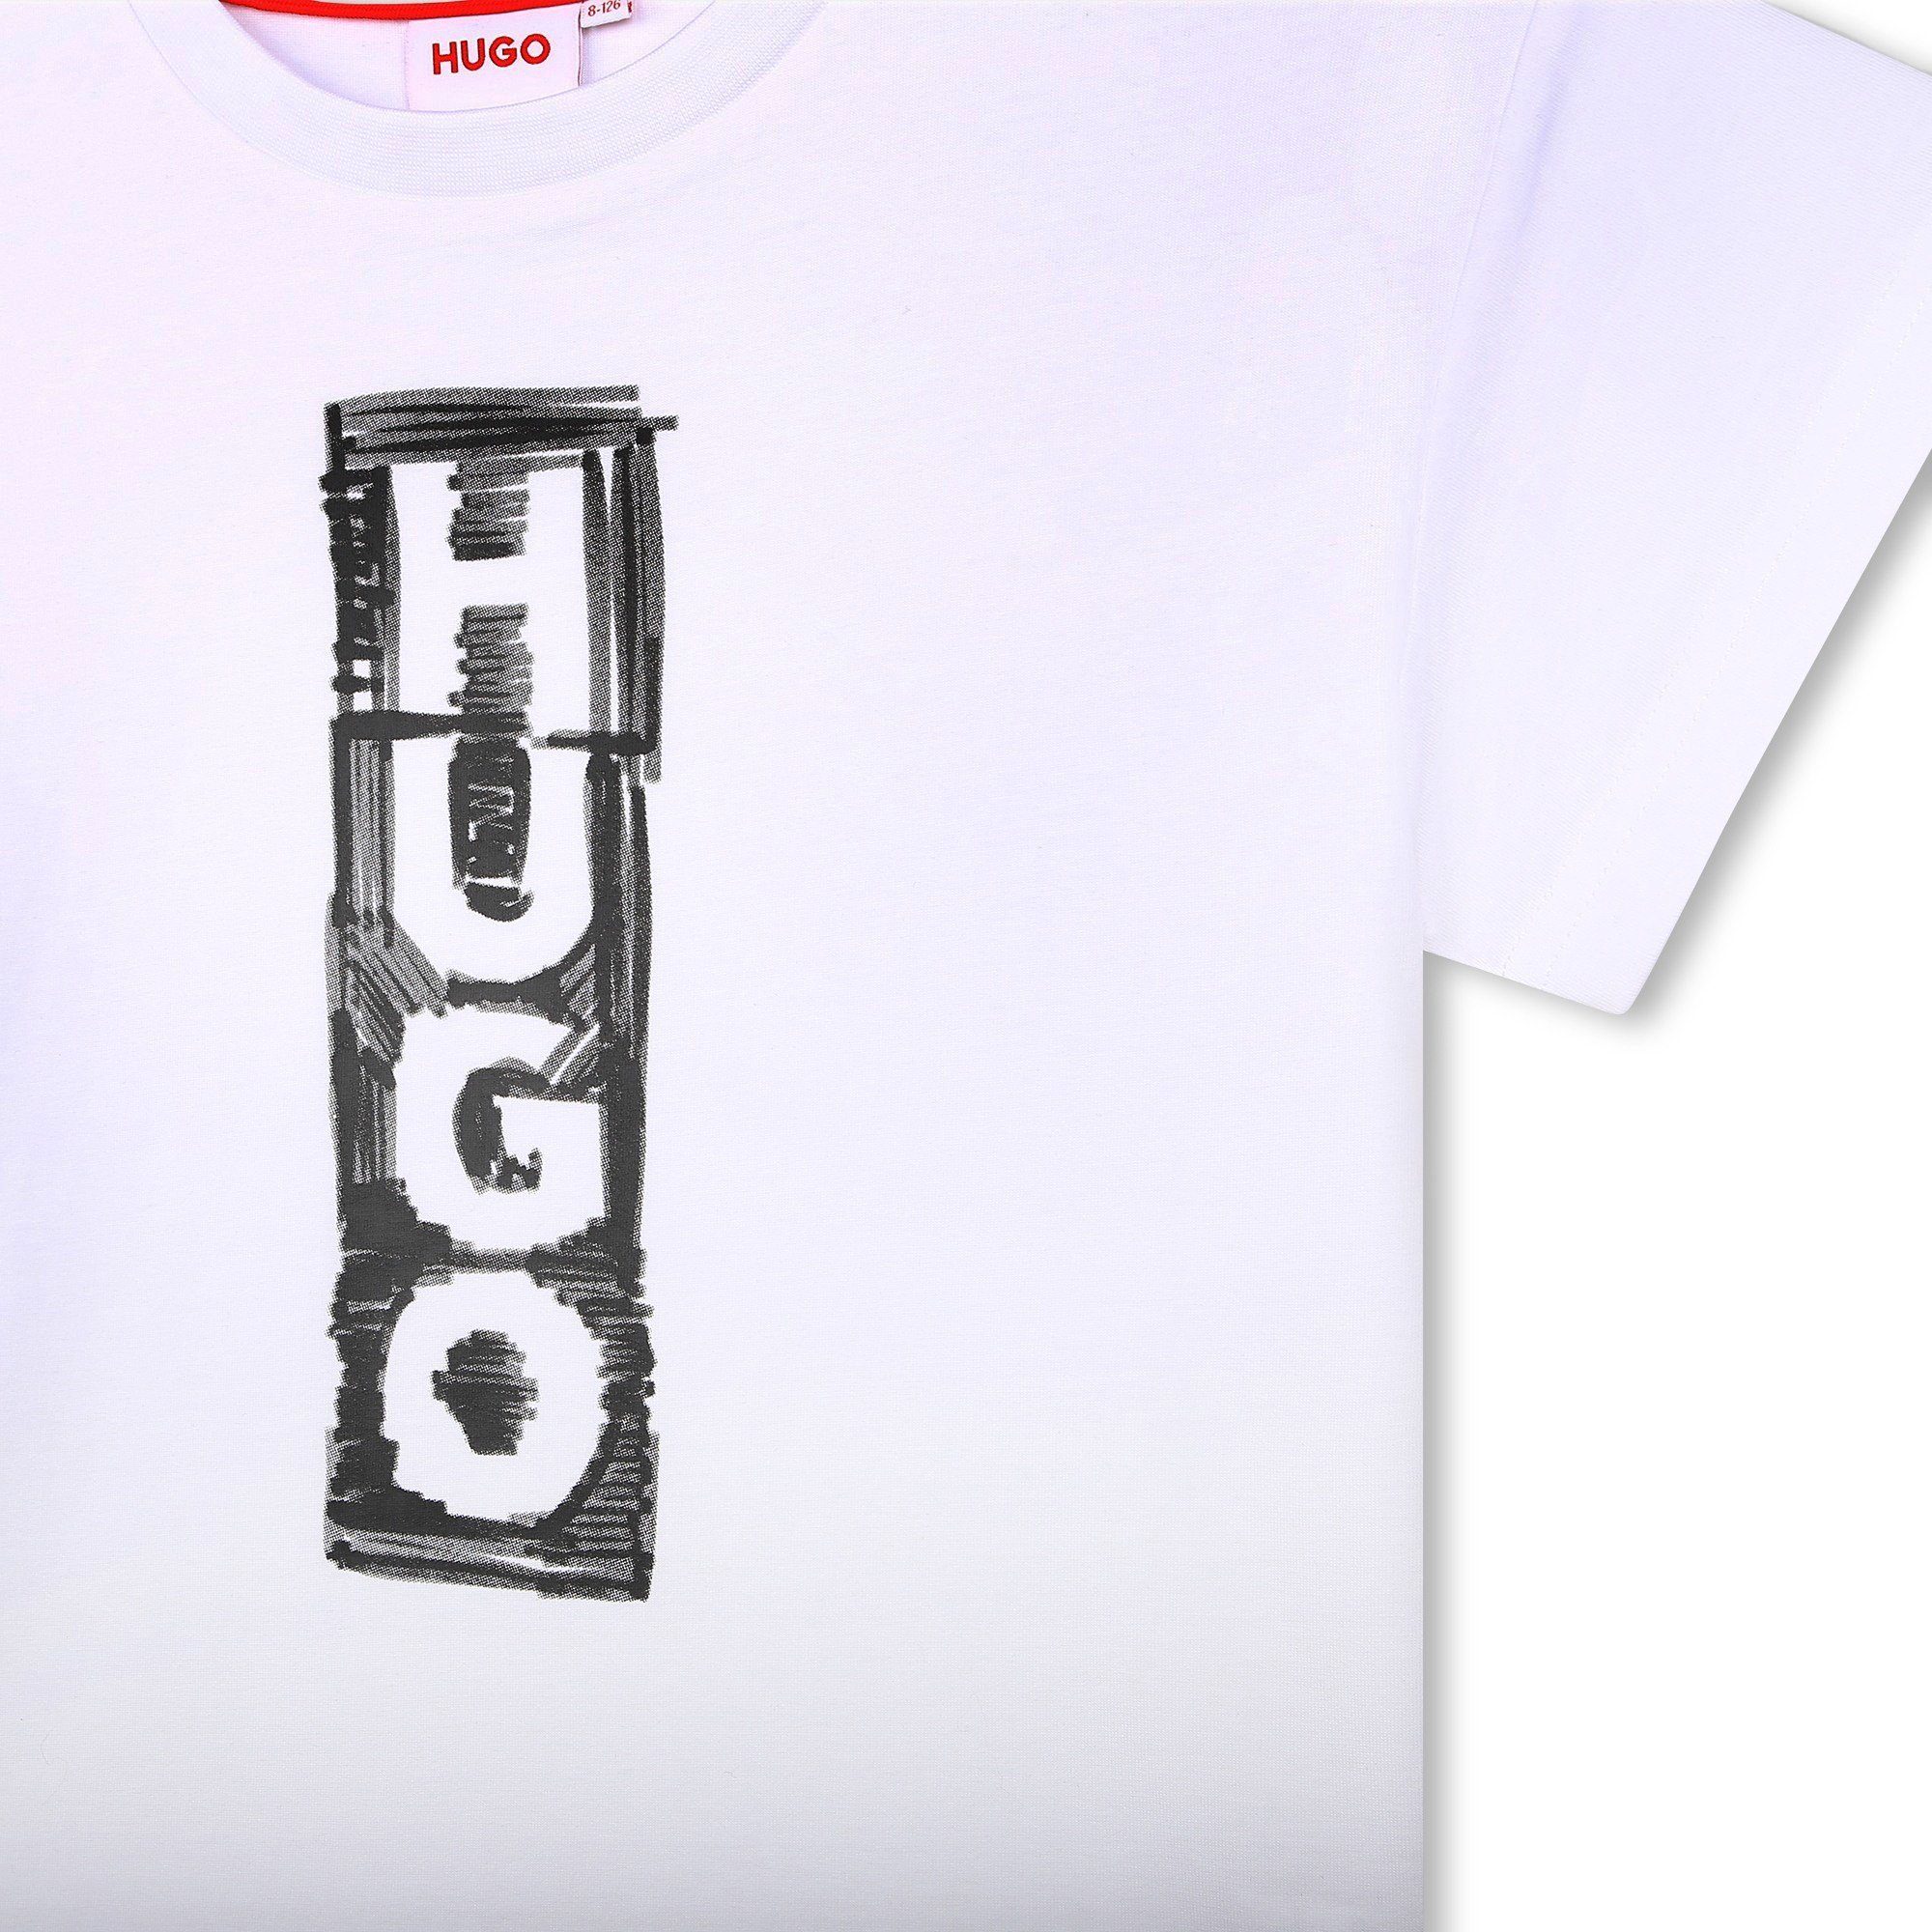 HUGO in T-Shirt Kinder Druck Print-Shirt Logo aus HUGO Biobaumwolle kurzarm mit weiß